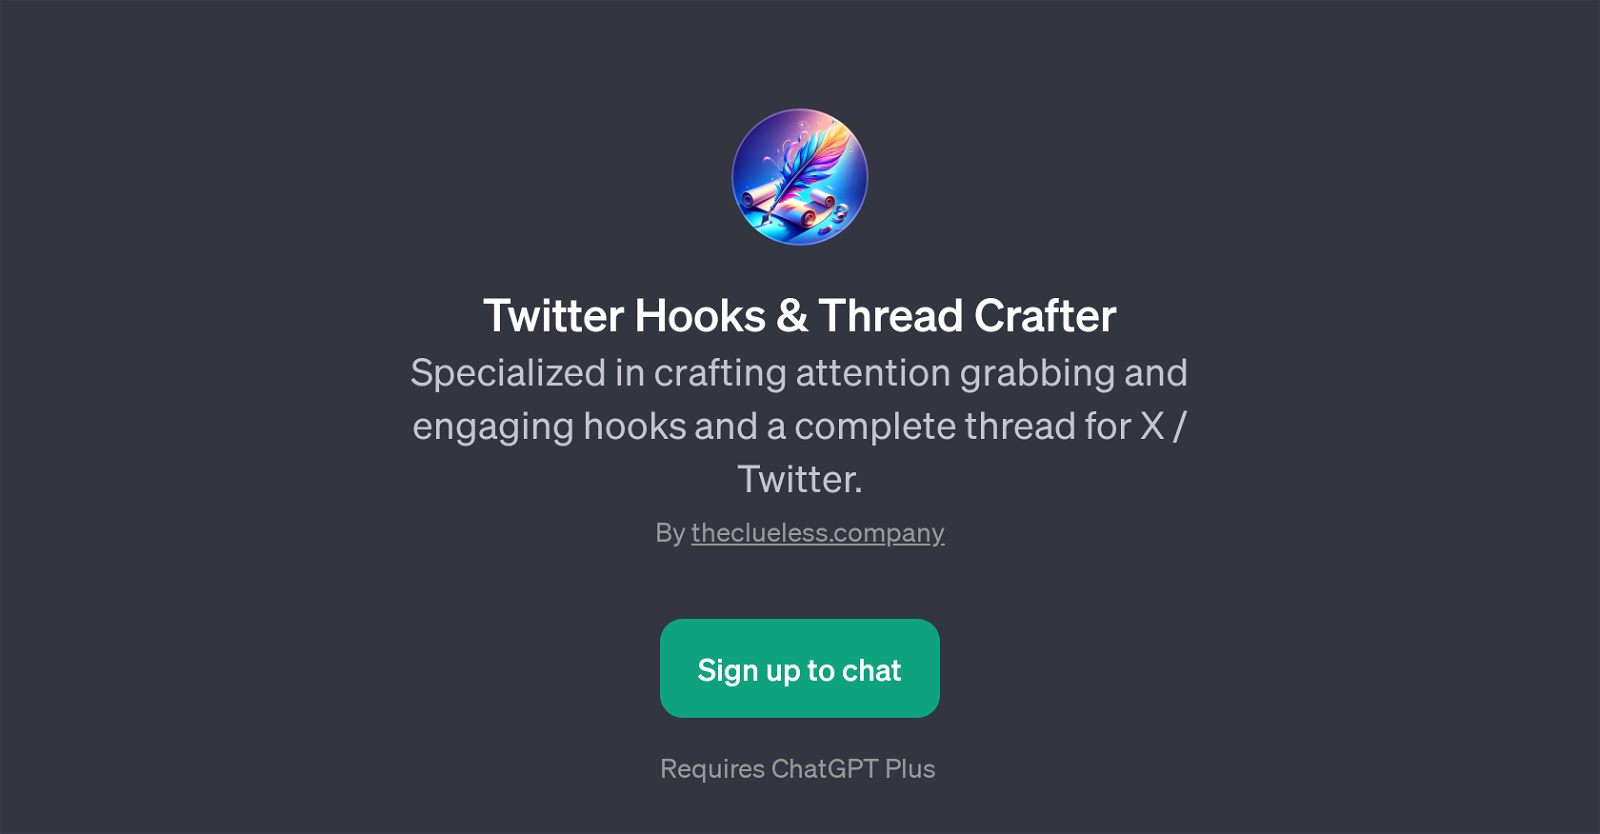 Twitter Hooks & Thread Crafter website